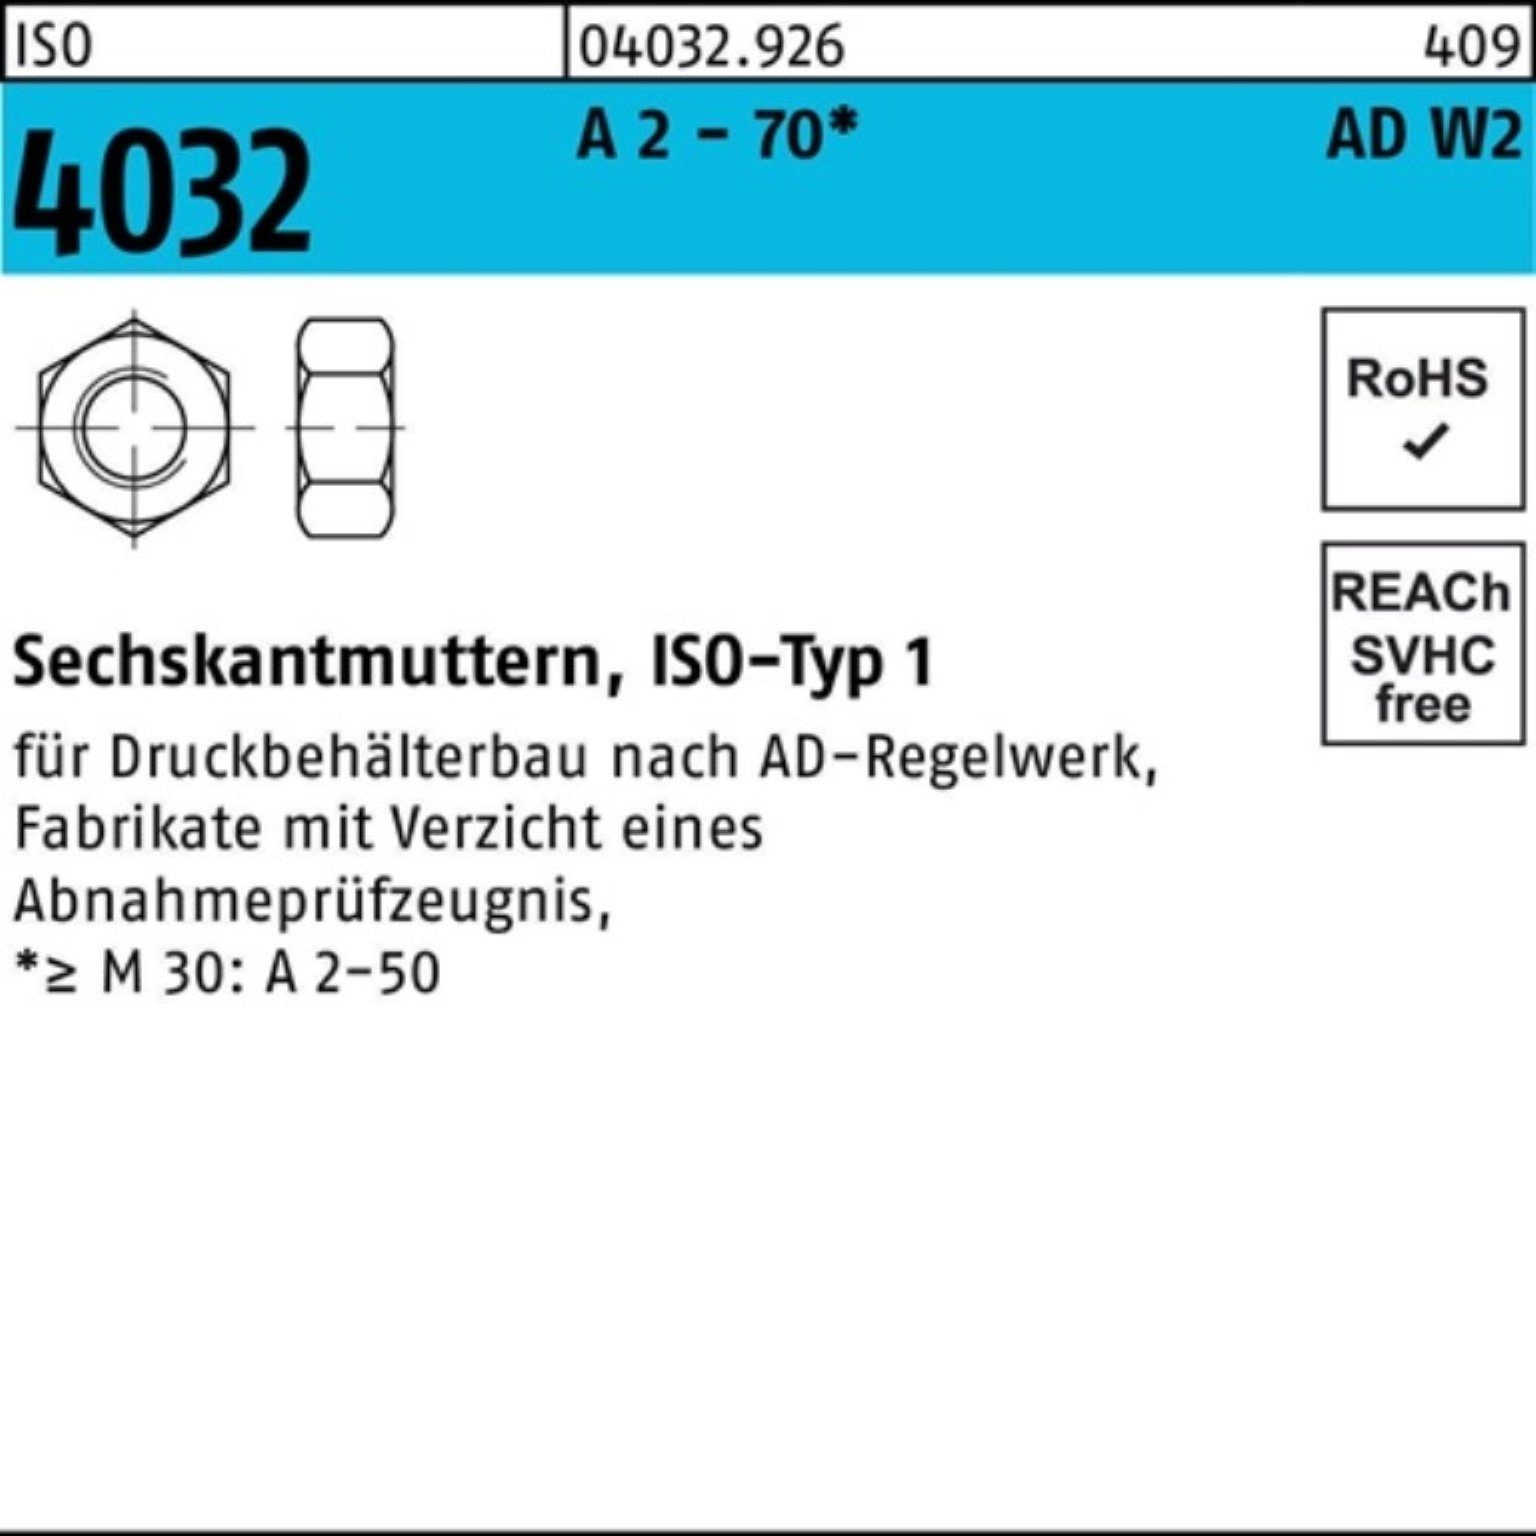 Bufab Muttern Stück 100er 25 2 M24 4032 4 - A Pack Sechskantmutter AD-W2 ISO 70 ISO